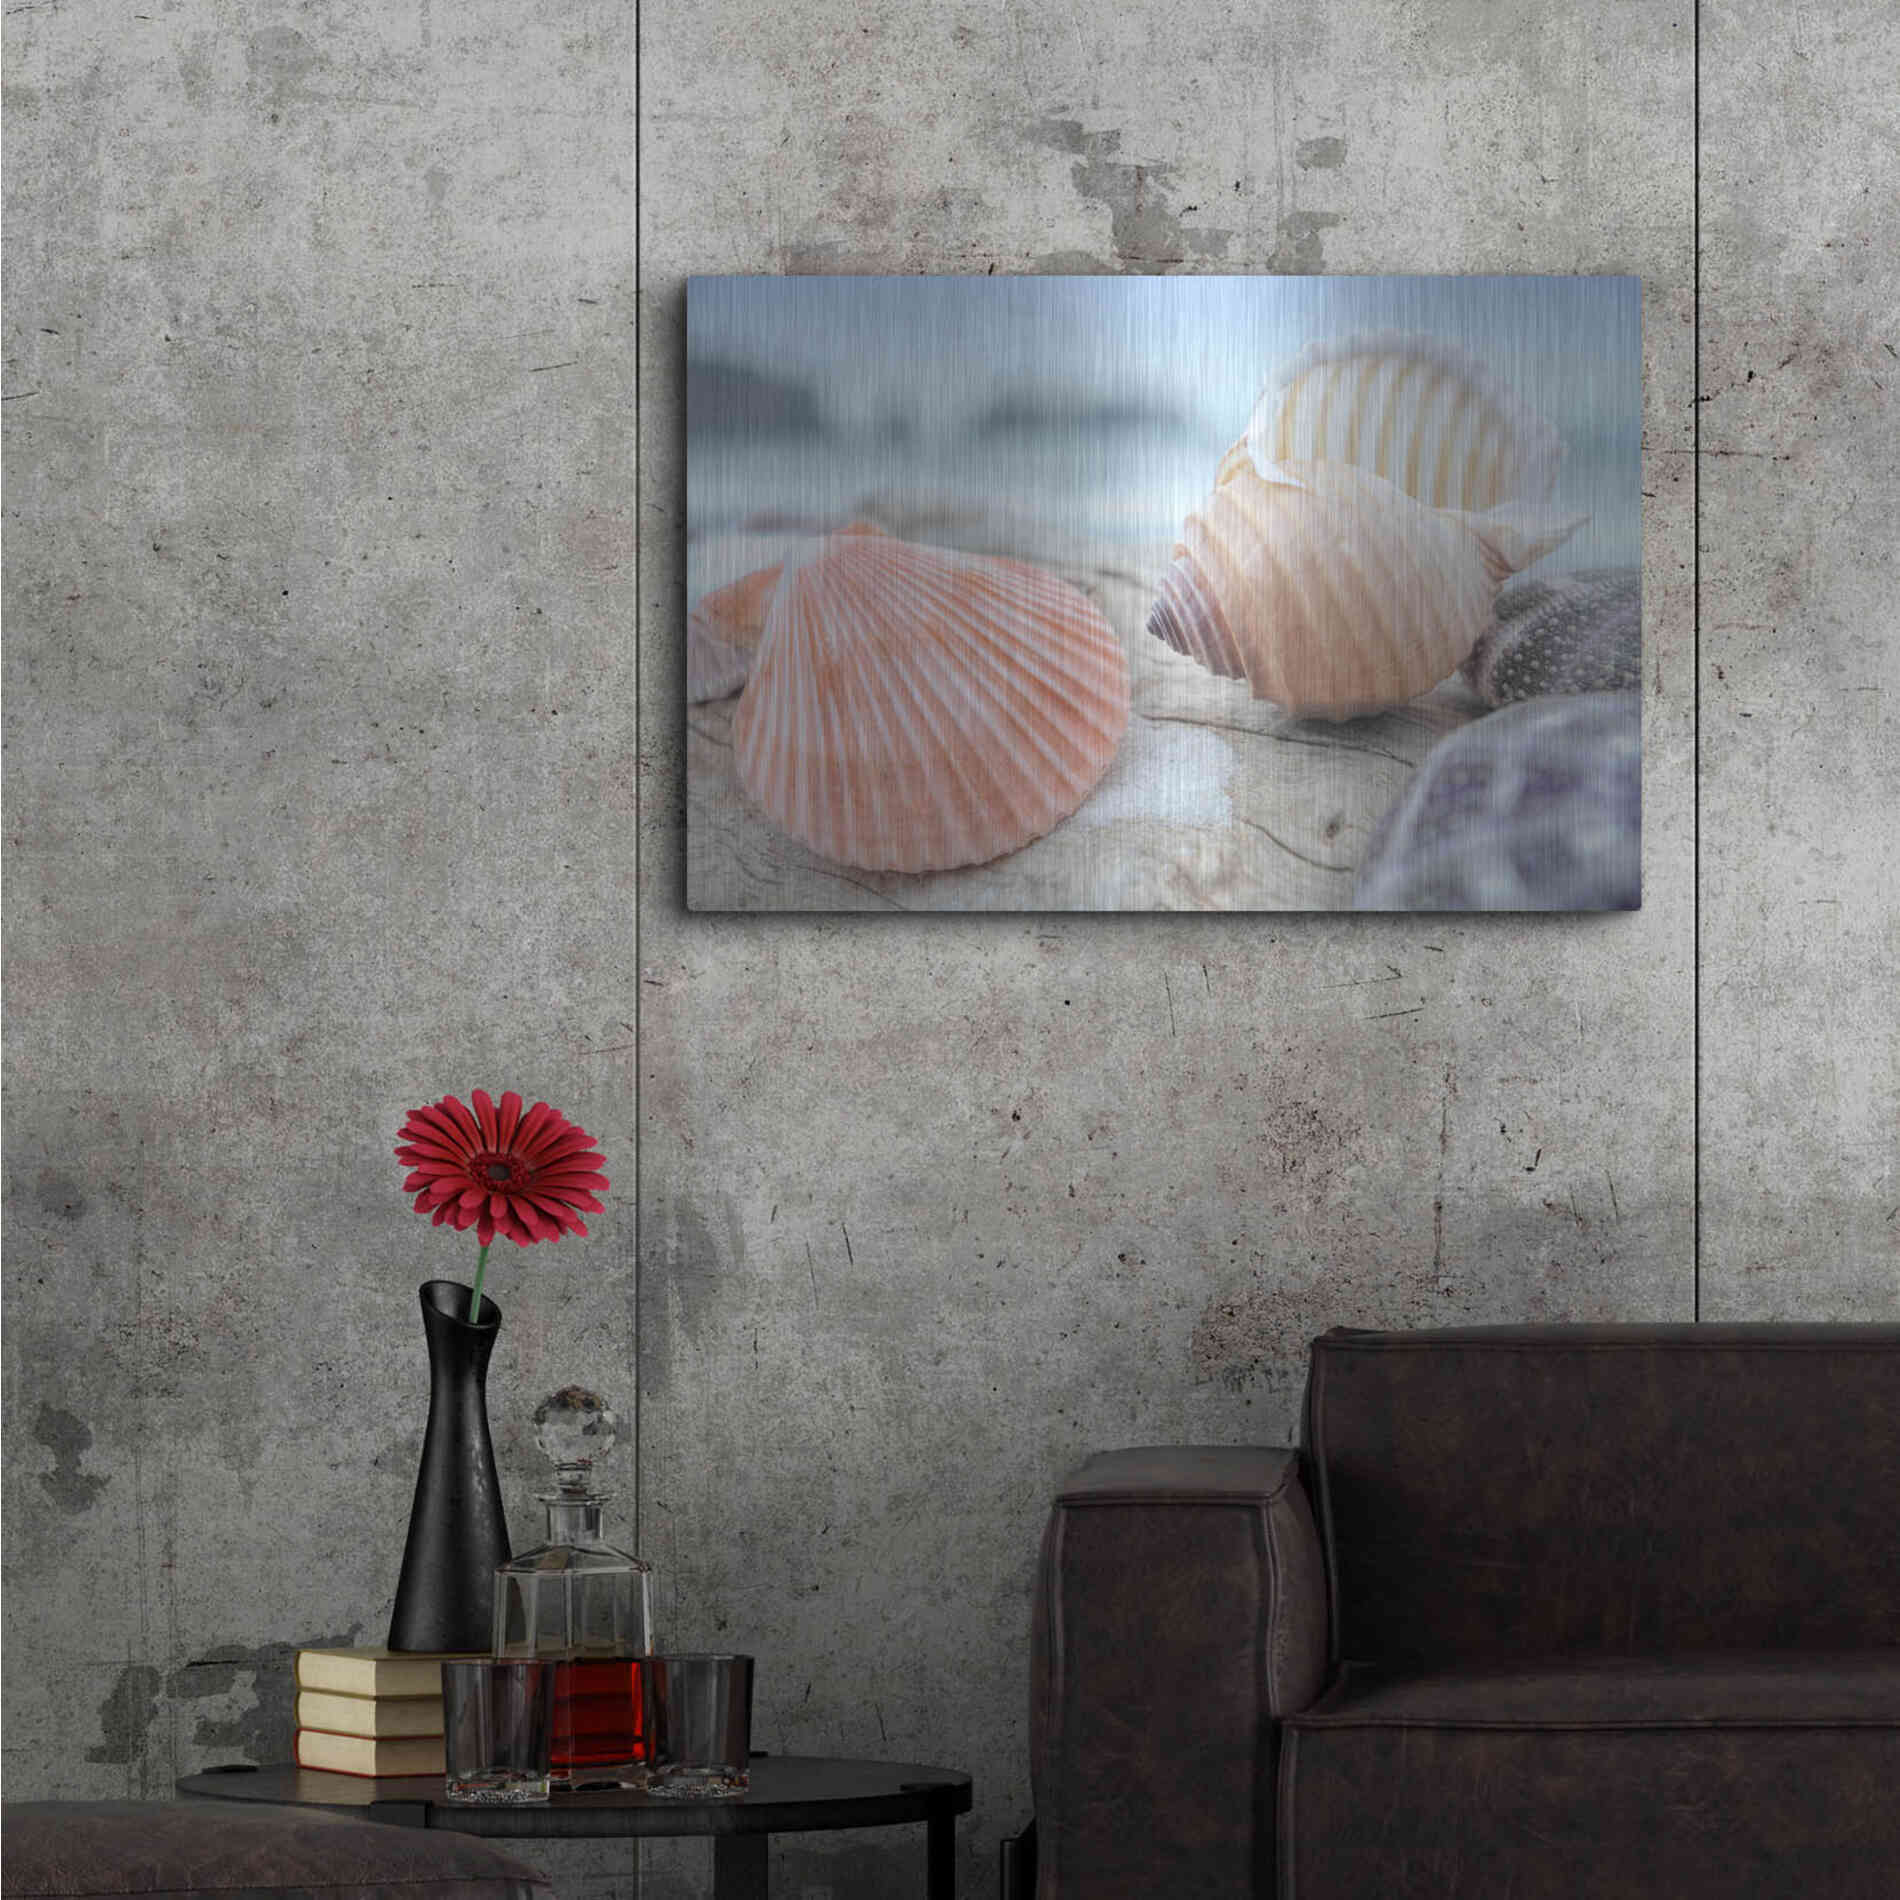 Luxe Metal Art 'Crescent Beach Shells 10' by Alan Blaustein Metal Wall Art,36x24